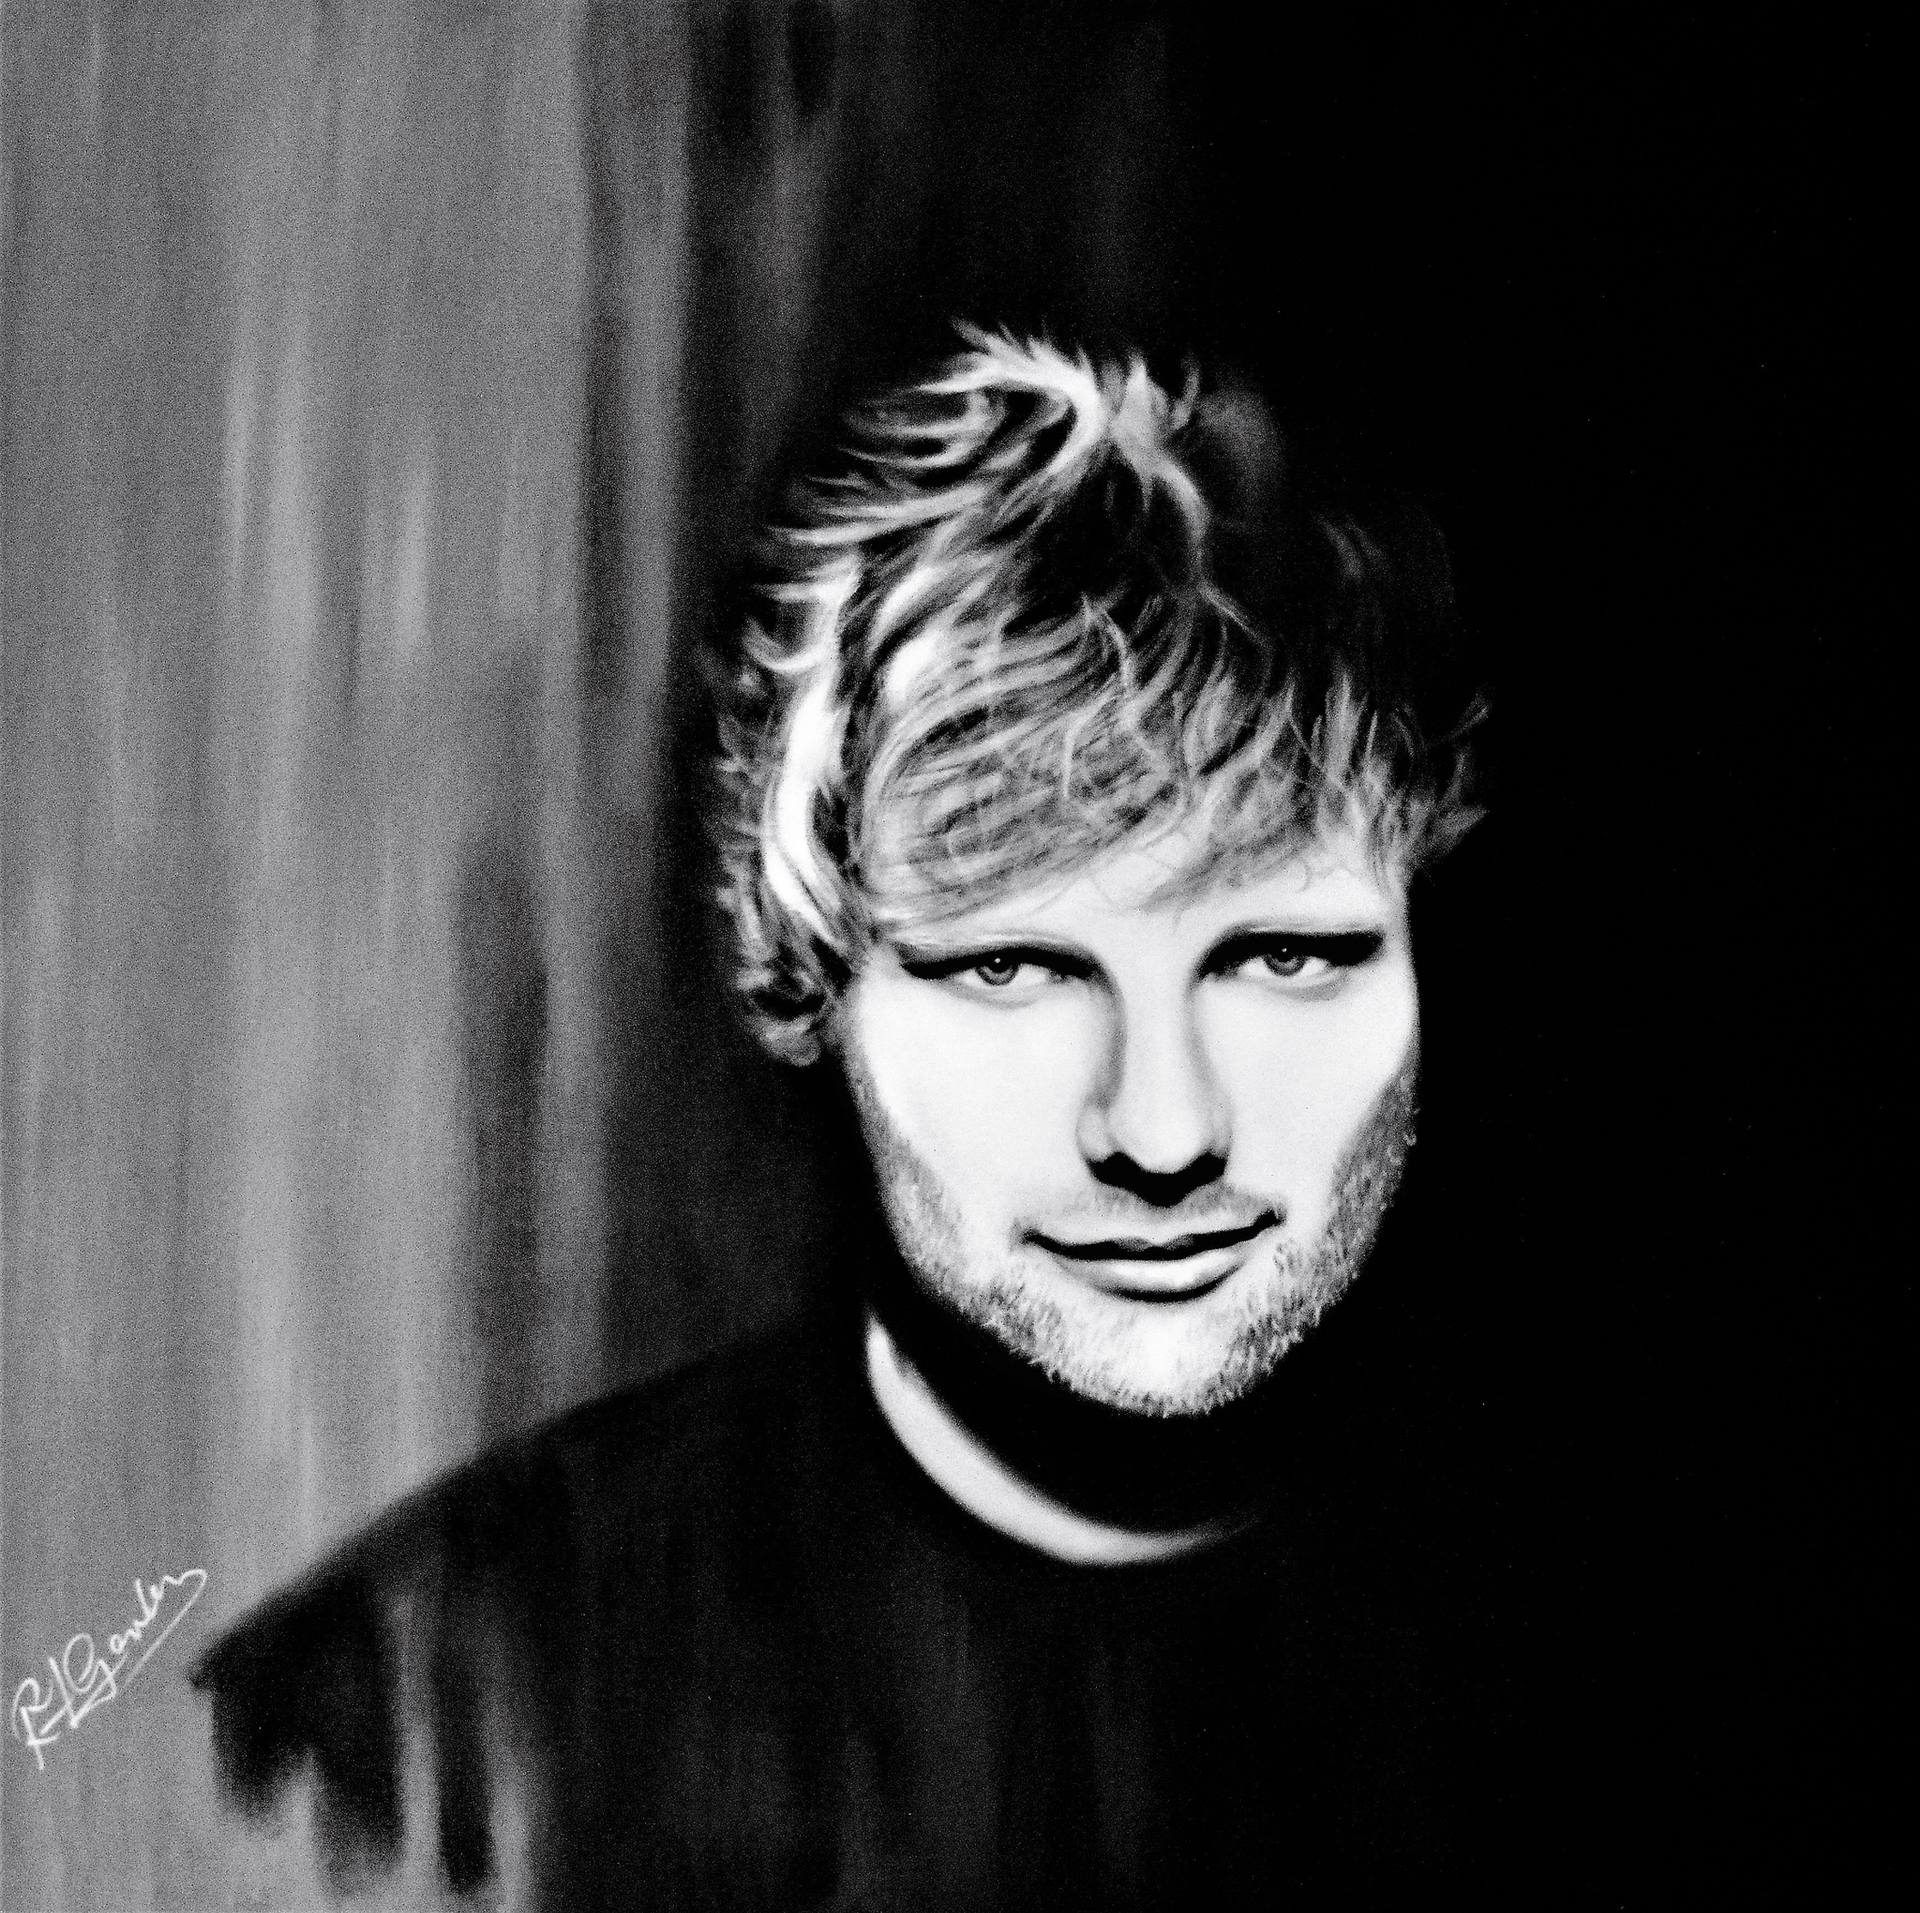 Ed Sheeran Black and White Logo - Ed Sheeran Painting by Richard Garnham | Saatchi Art